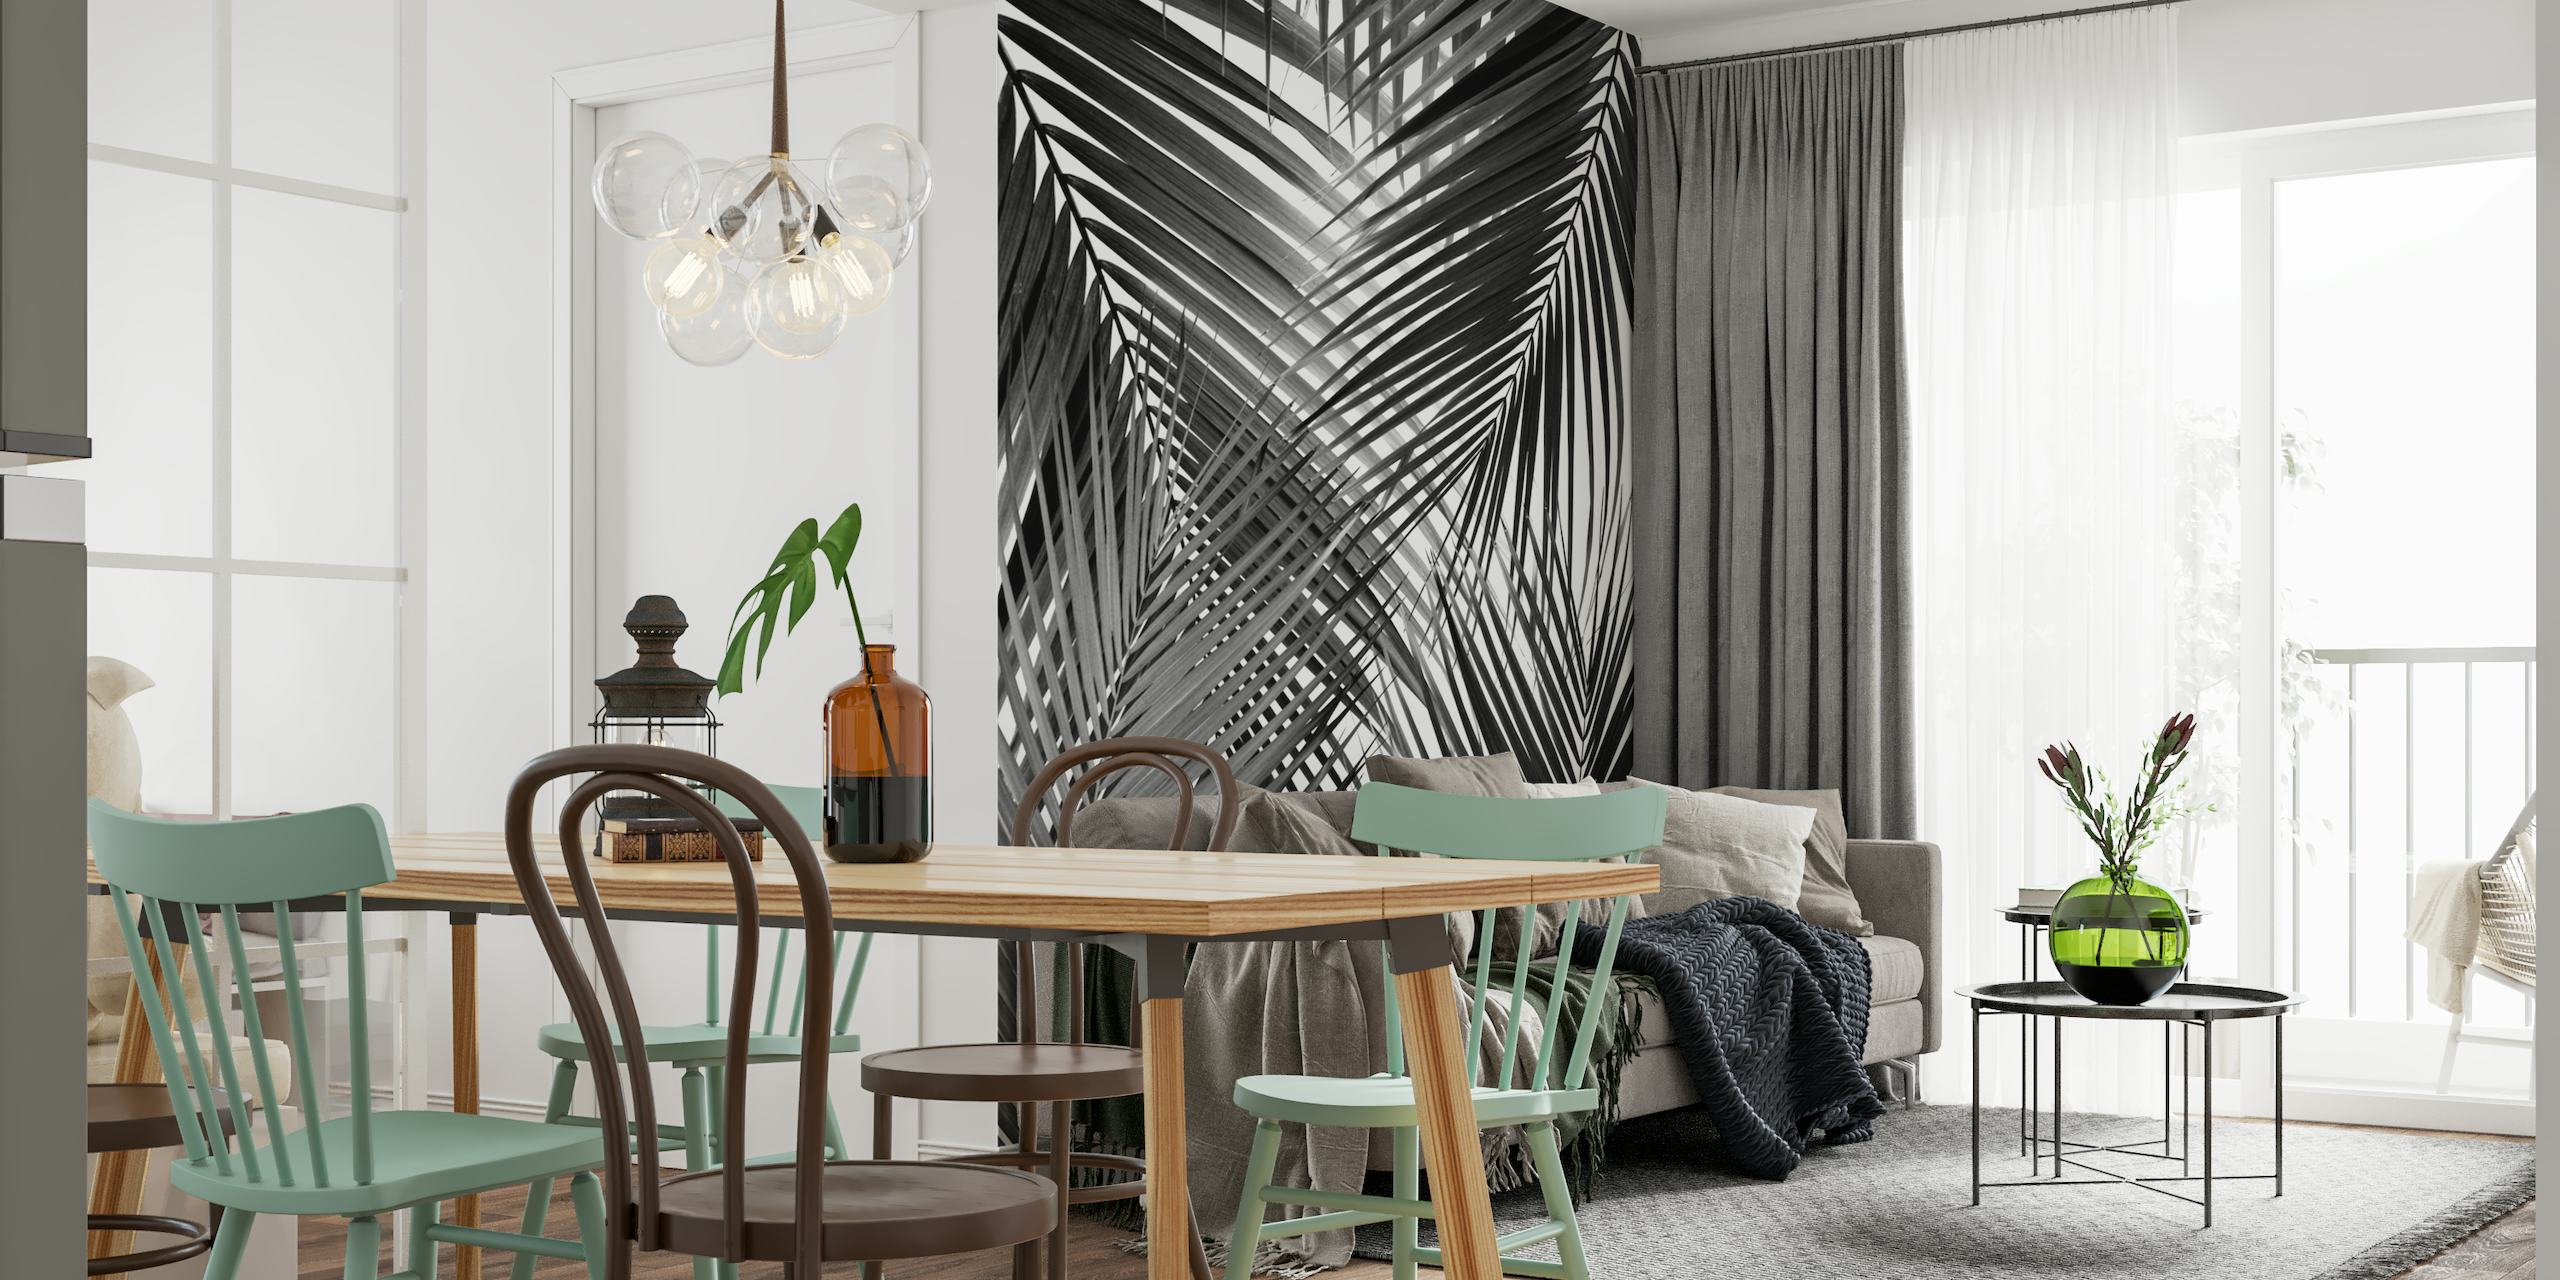 Mural en blanco y negro de diseño abstracto de hojas de palma.